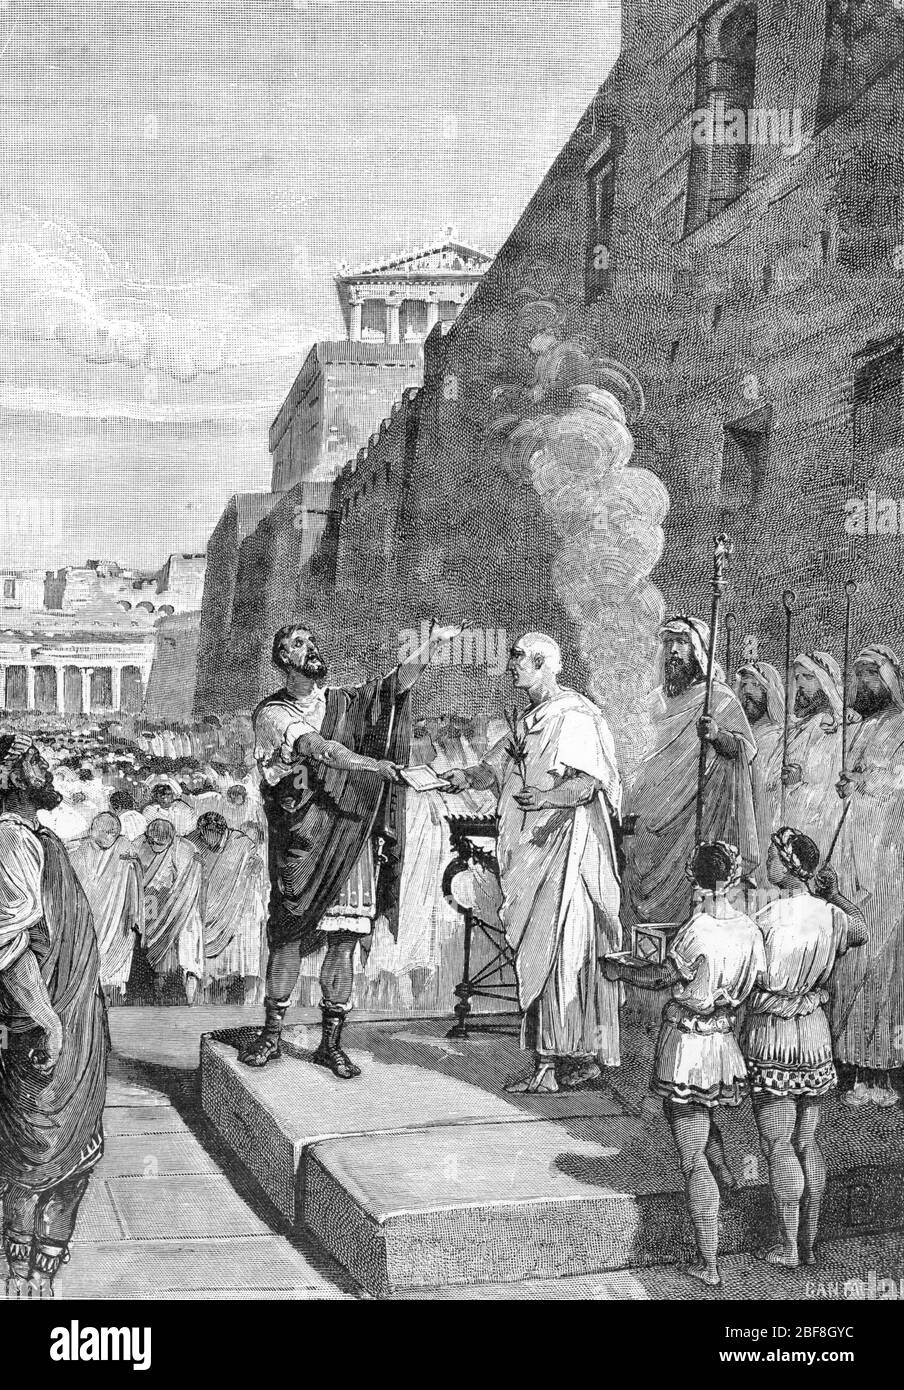 Antiquite romaine : Marcus Furius Camillus dit Camille choisit un placement sur l'Aventin pour un temple décède un Junon 392 avant JC (Temple de Juno Banque D'Images